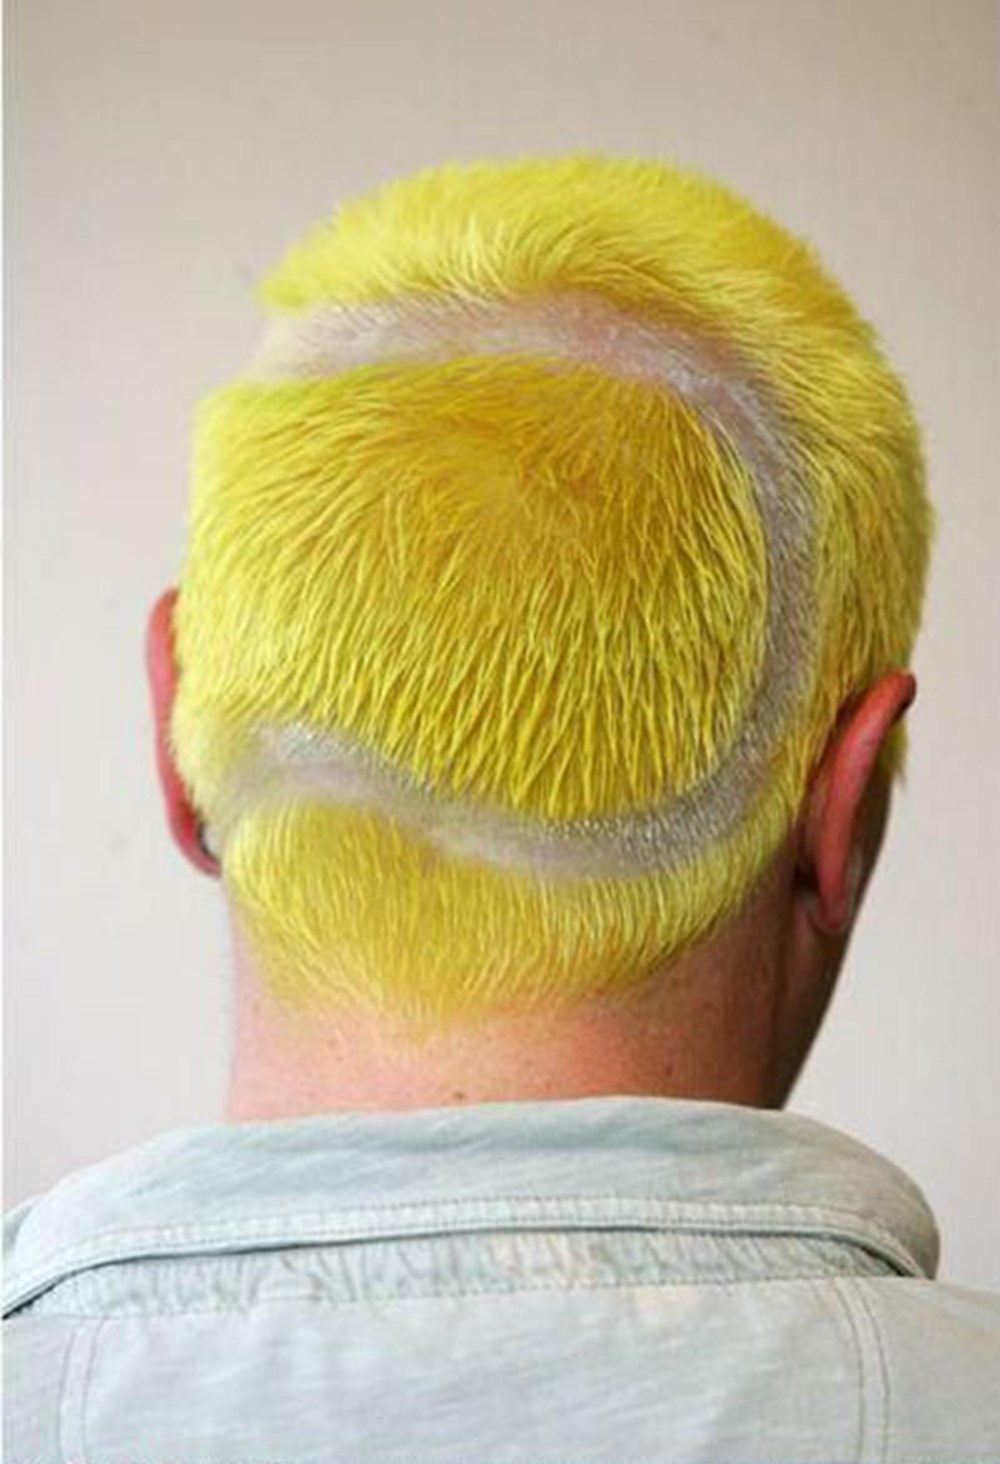 Бритая плохо. Жёлтые волосы мужские. Желтая прическа мужская. Узор краской на голове на затылке. Желтые волосы прическа мужская.